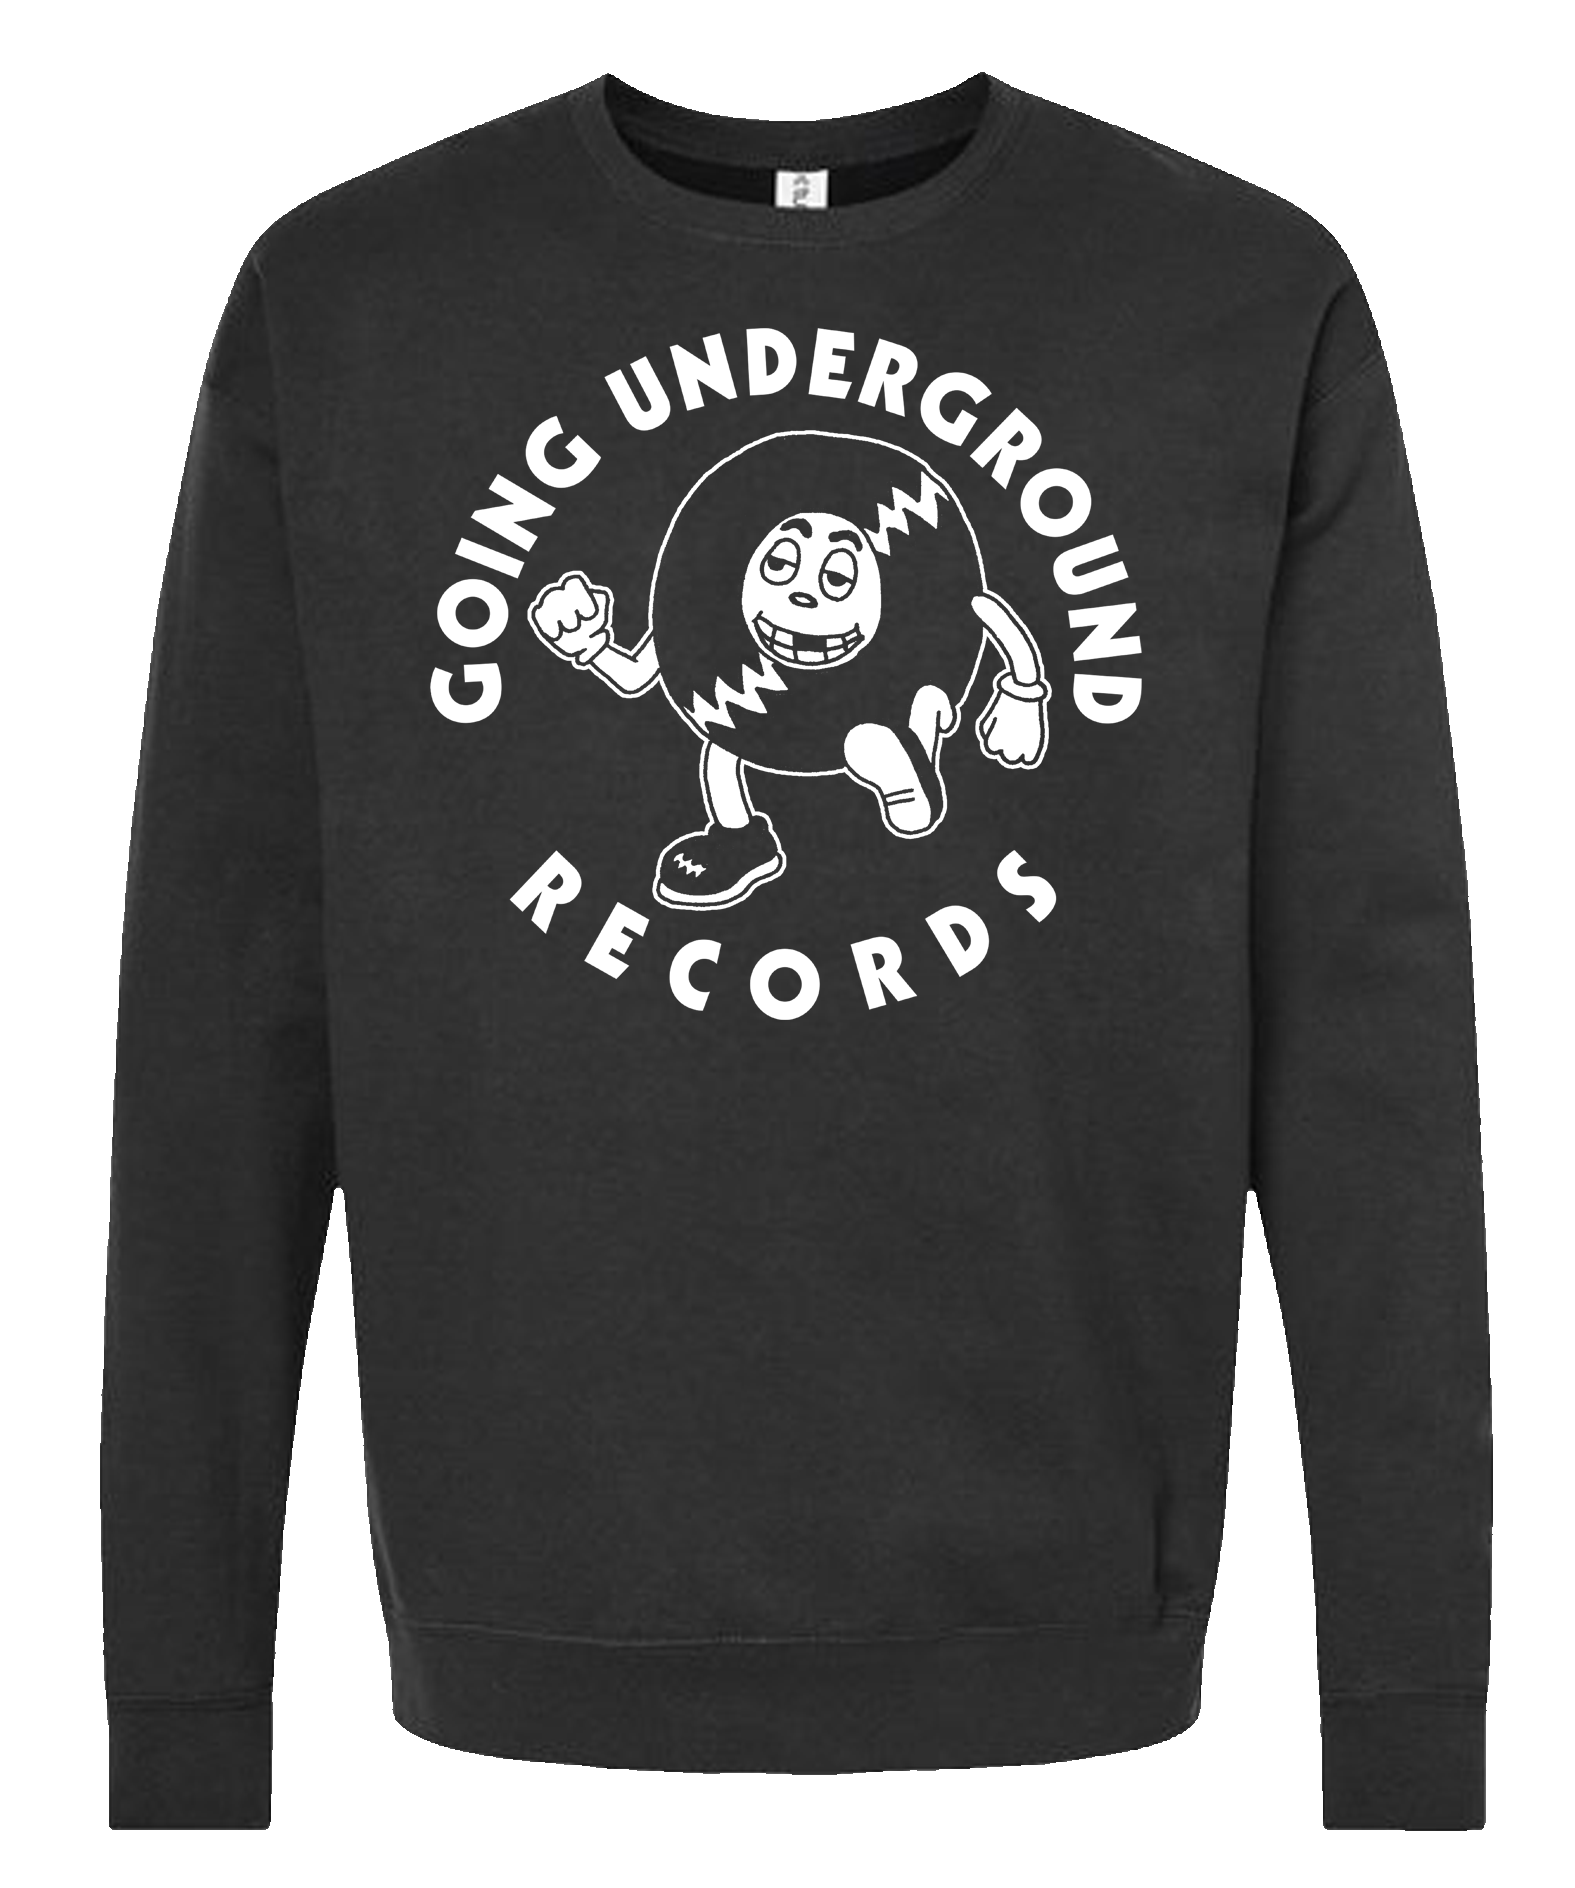 GOING UNDERGROUND - RECORD BOY Crewneck Sweatshirt